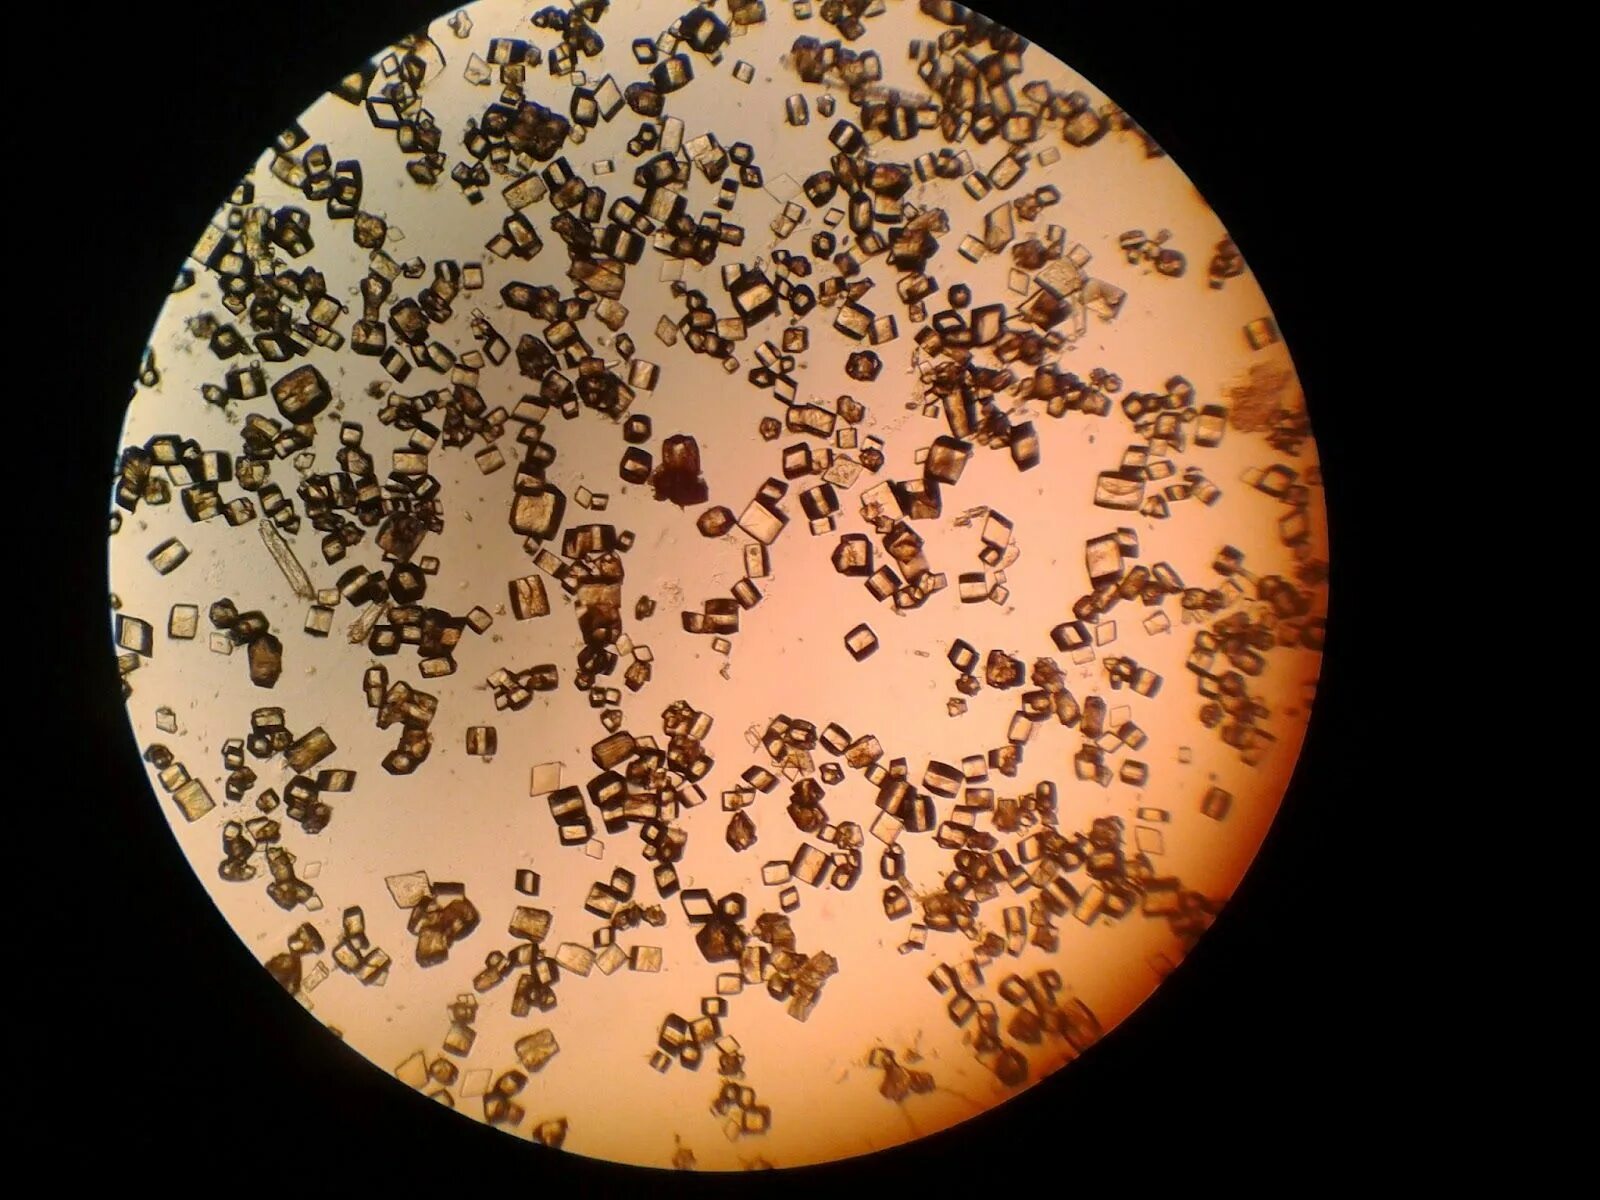 Иглы в моче. Оксалаты микроскопия мочи. Соли в моче микроскопия Ураты. Мочевая кислота микроскопия мочи. Микроскопия мочи соли мочевой кислоты.